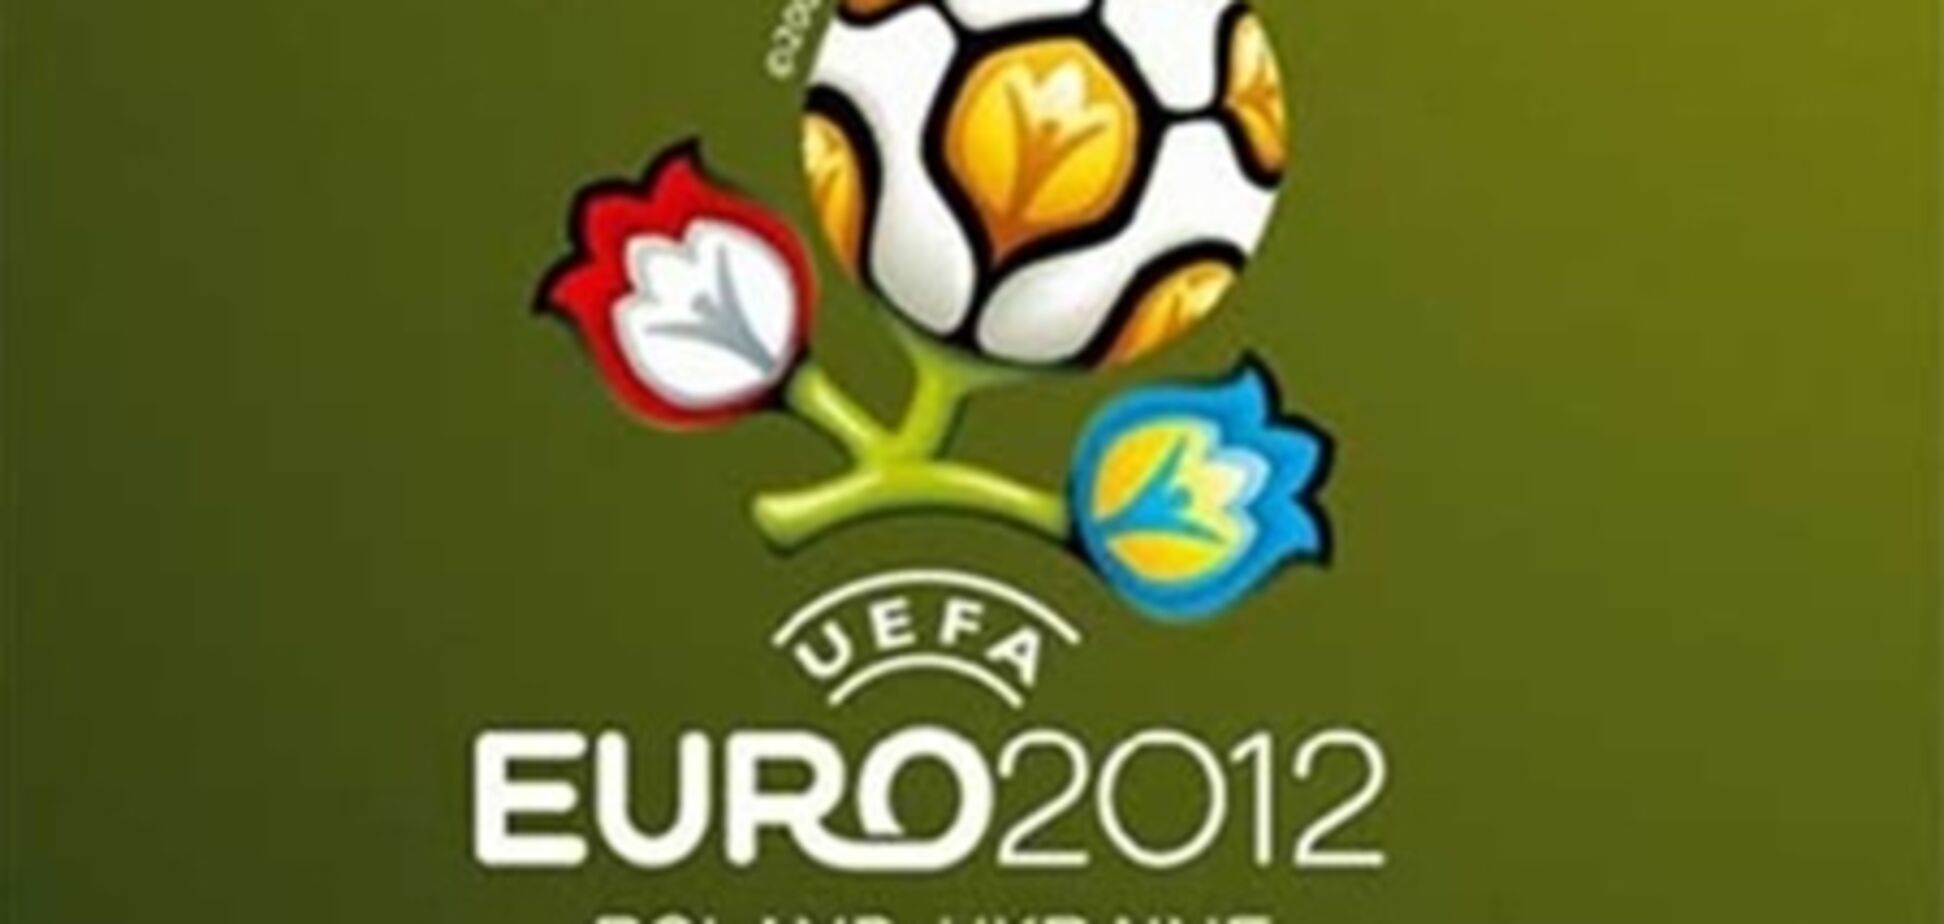 Украина достойно примет Евро-2012 - Колесников